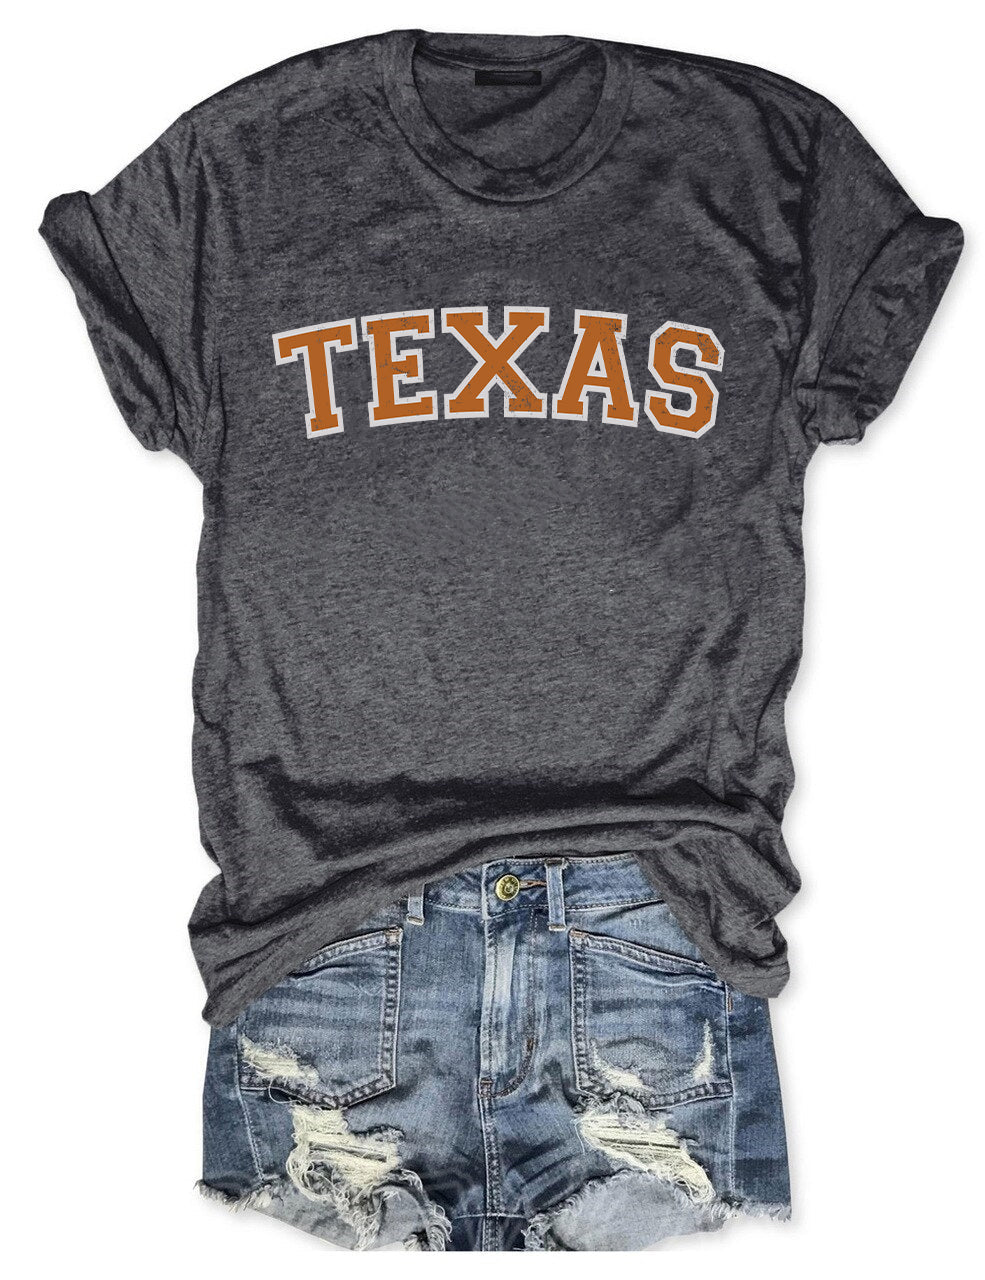 Vintage Texas T-shirt